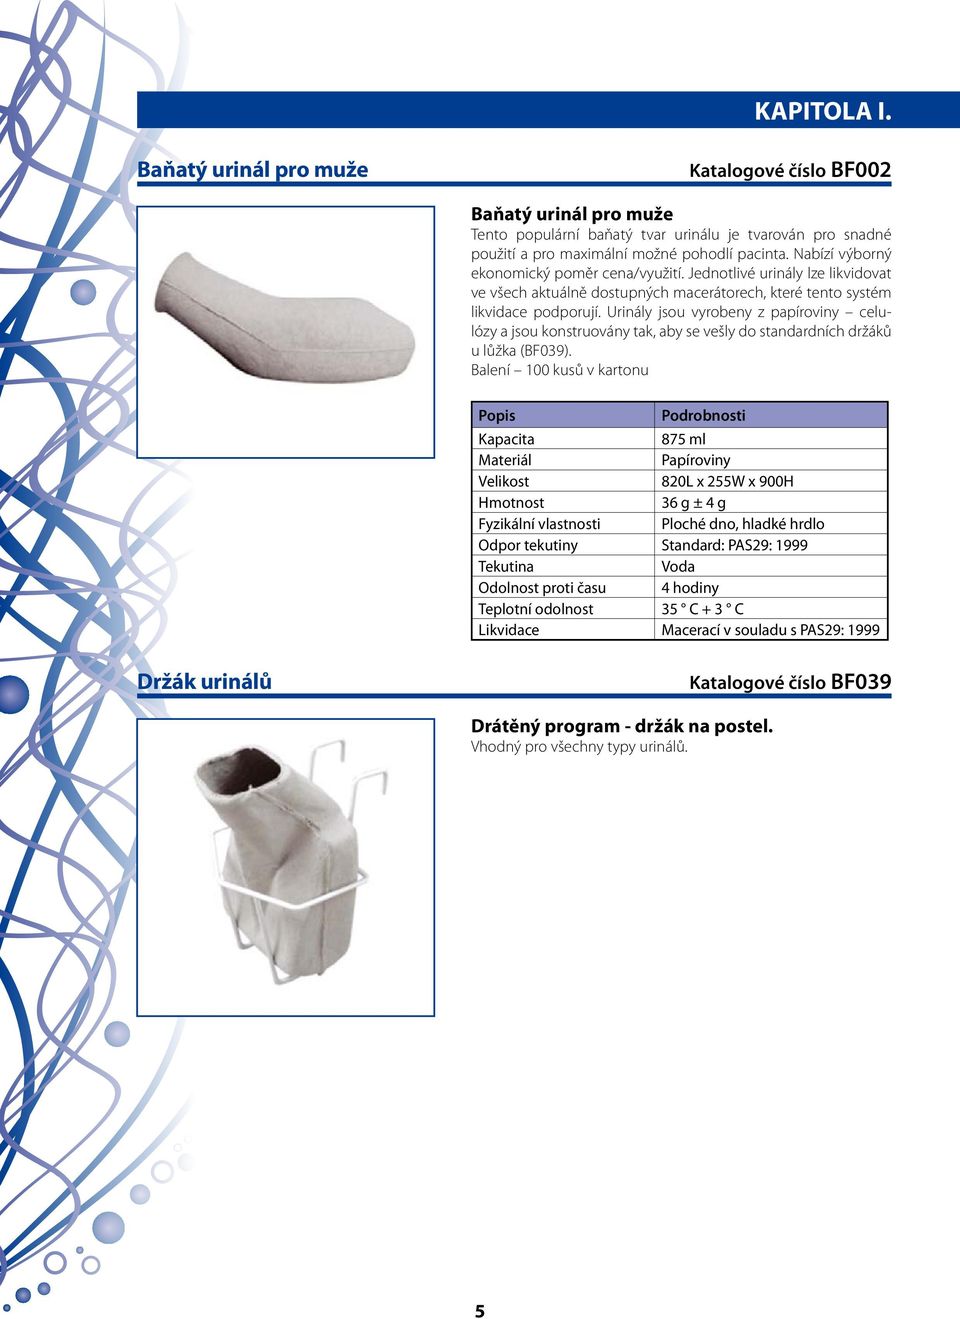 Urinály jsou vyrobeny z papíroviny celulózy a jsou konstruovány tak, aby se vešly do standardních držáků u lůžka (BF039).